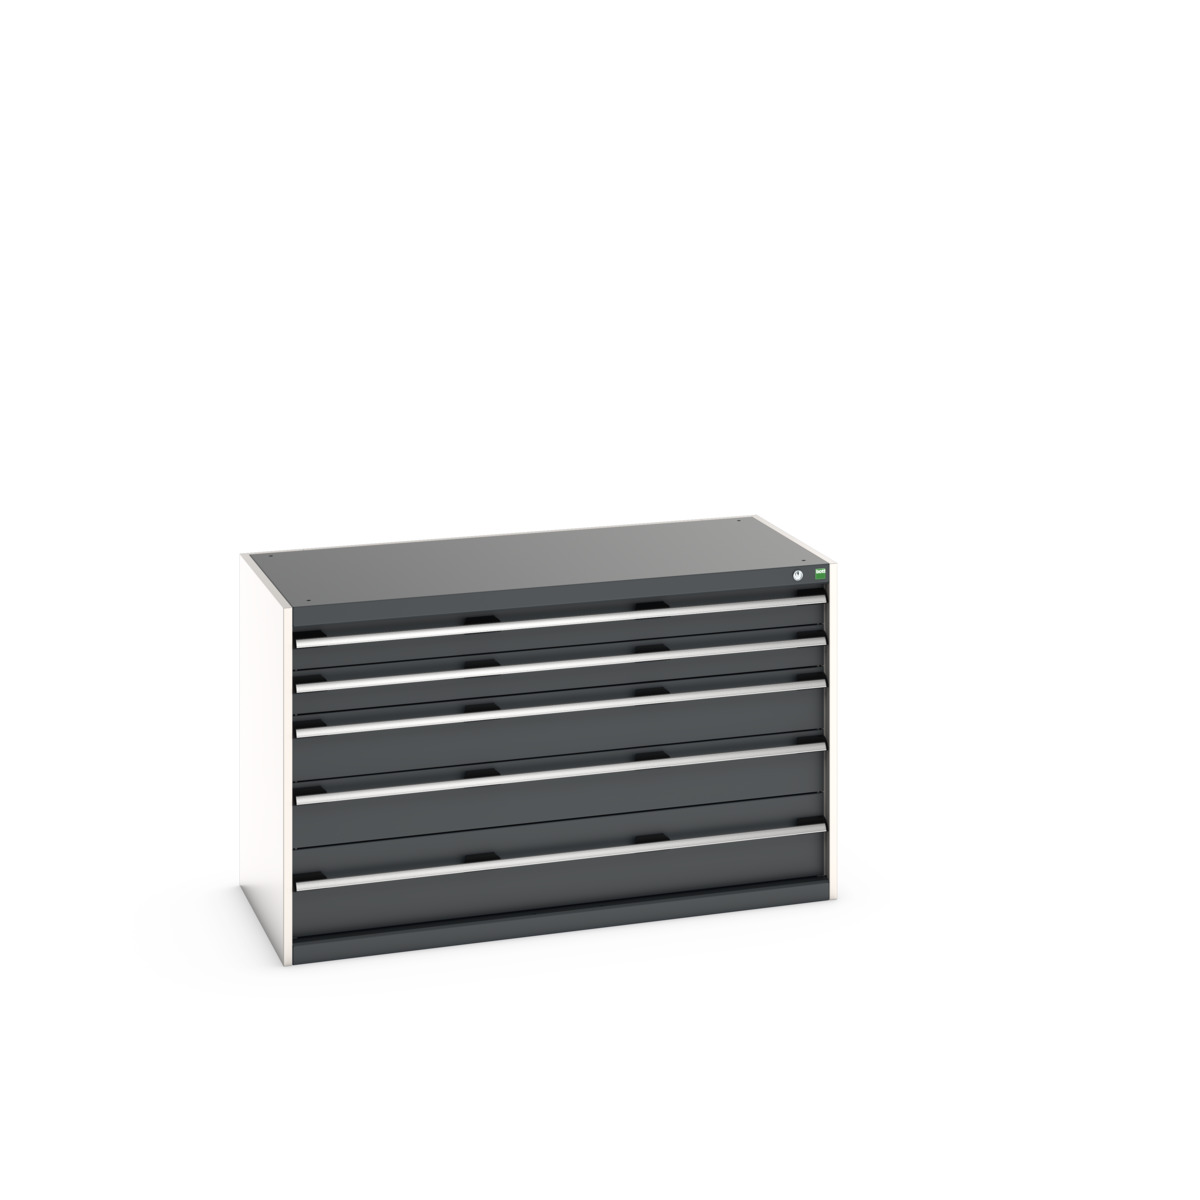 40022107.19V - cubio drawer cabinet